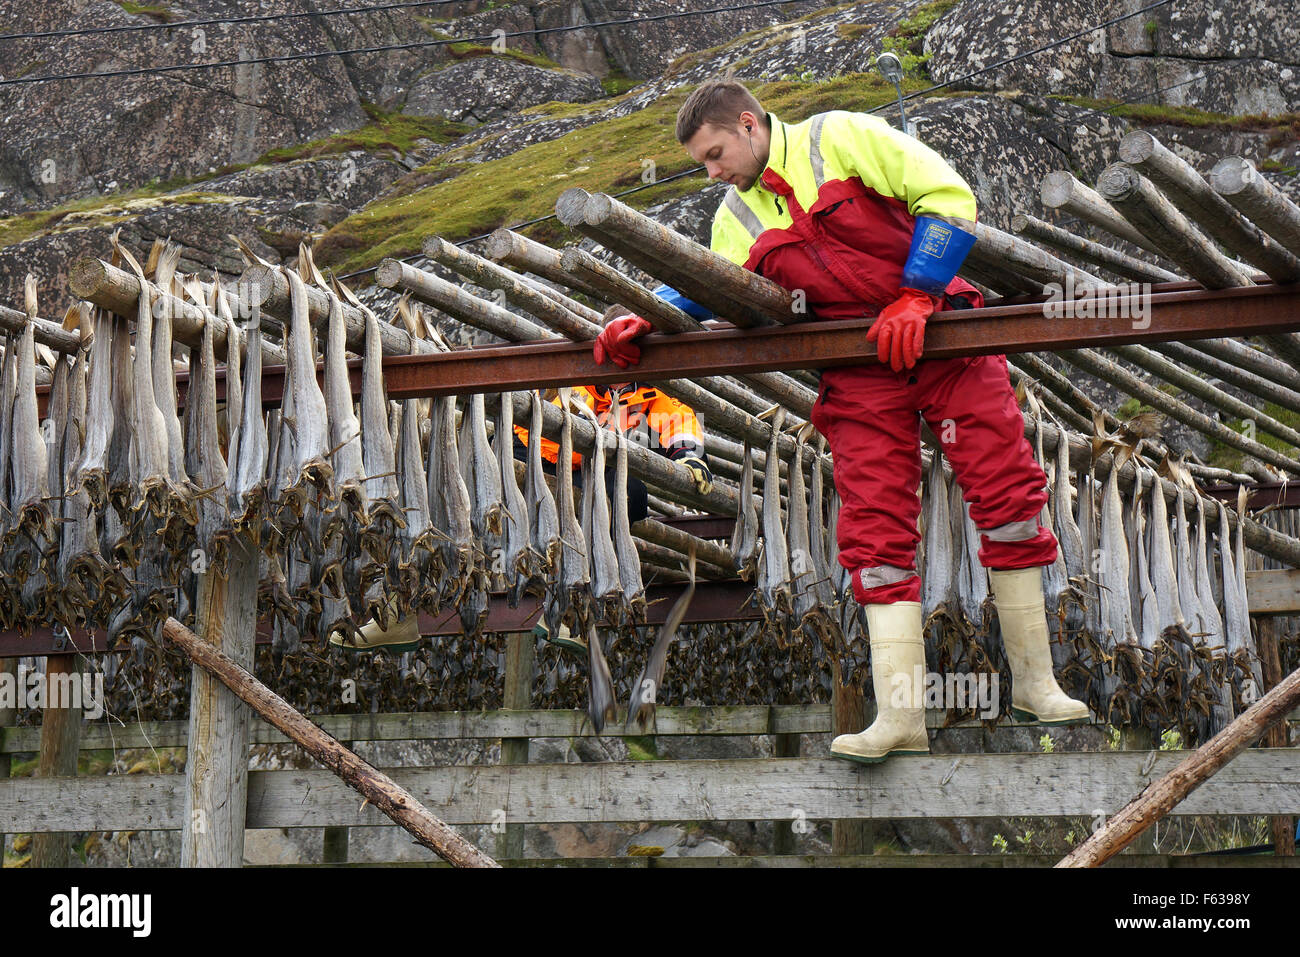 Stockfish harvest, Vestvagøya, îles Lofoten, Norvège. Banque D'Images